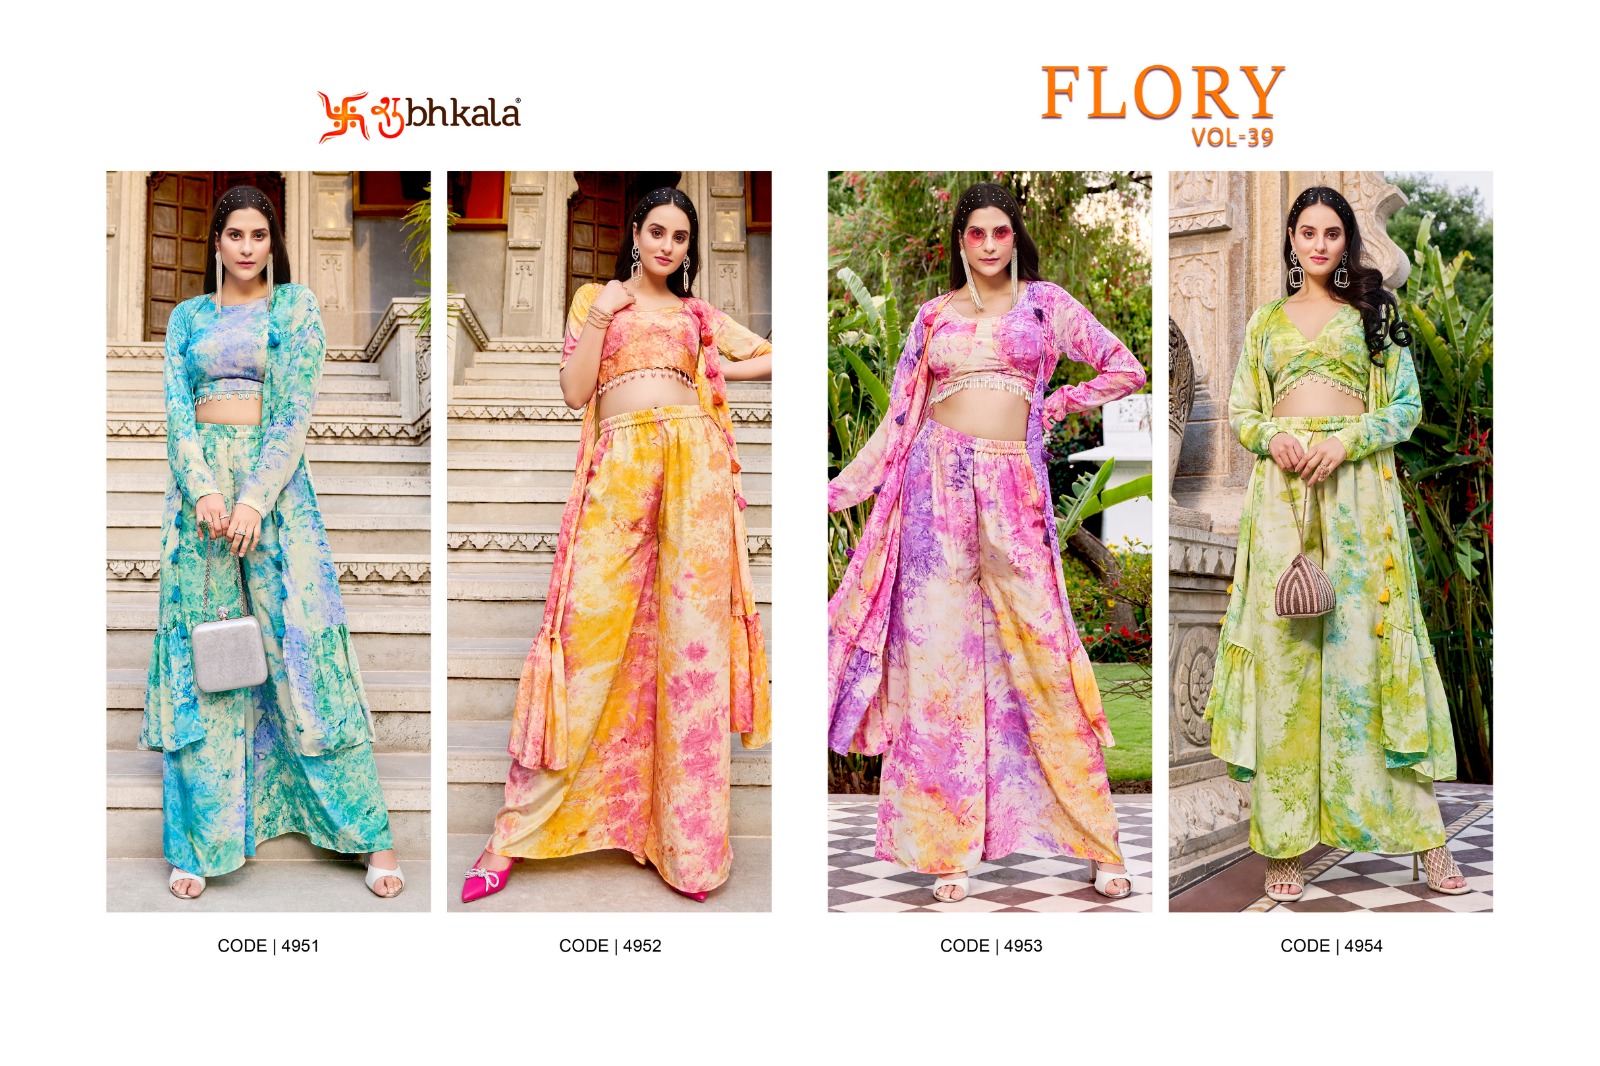 Shubhkala Flory Vol 39 collection 4